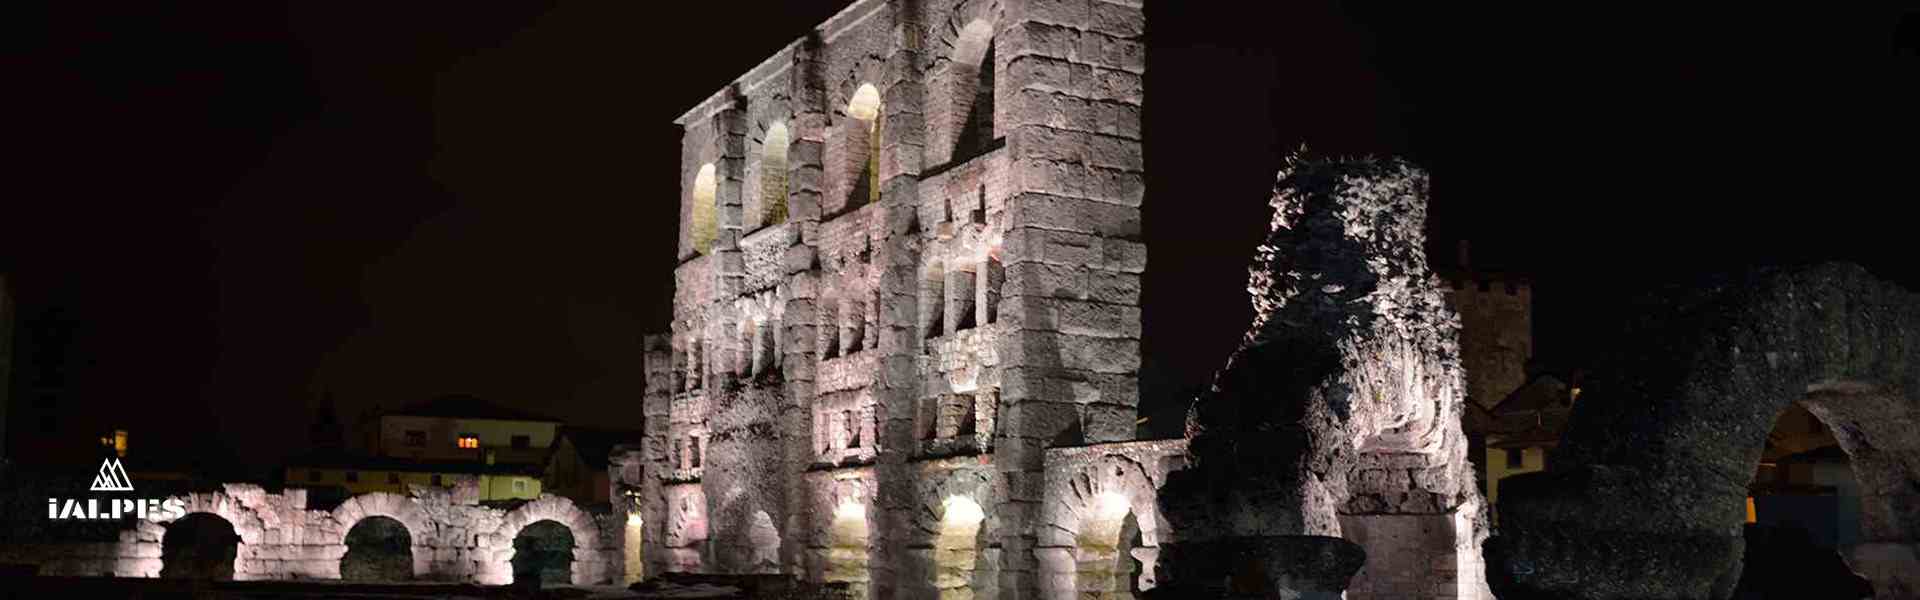 Théâtre romain Aoste, Italie